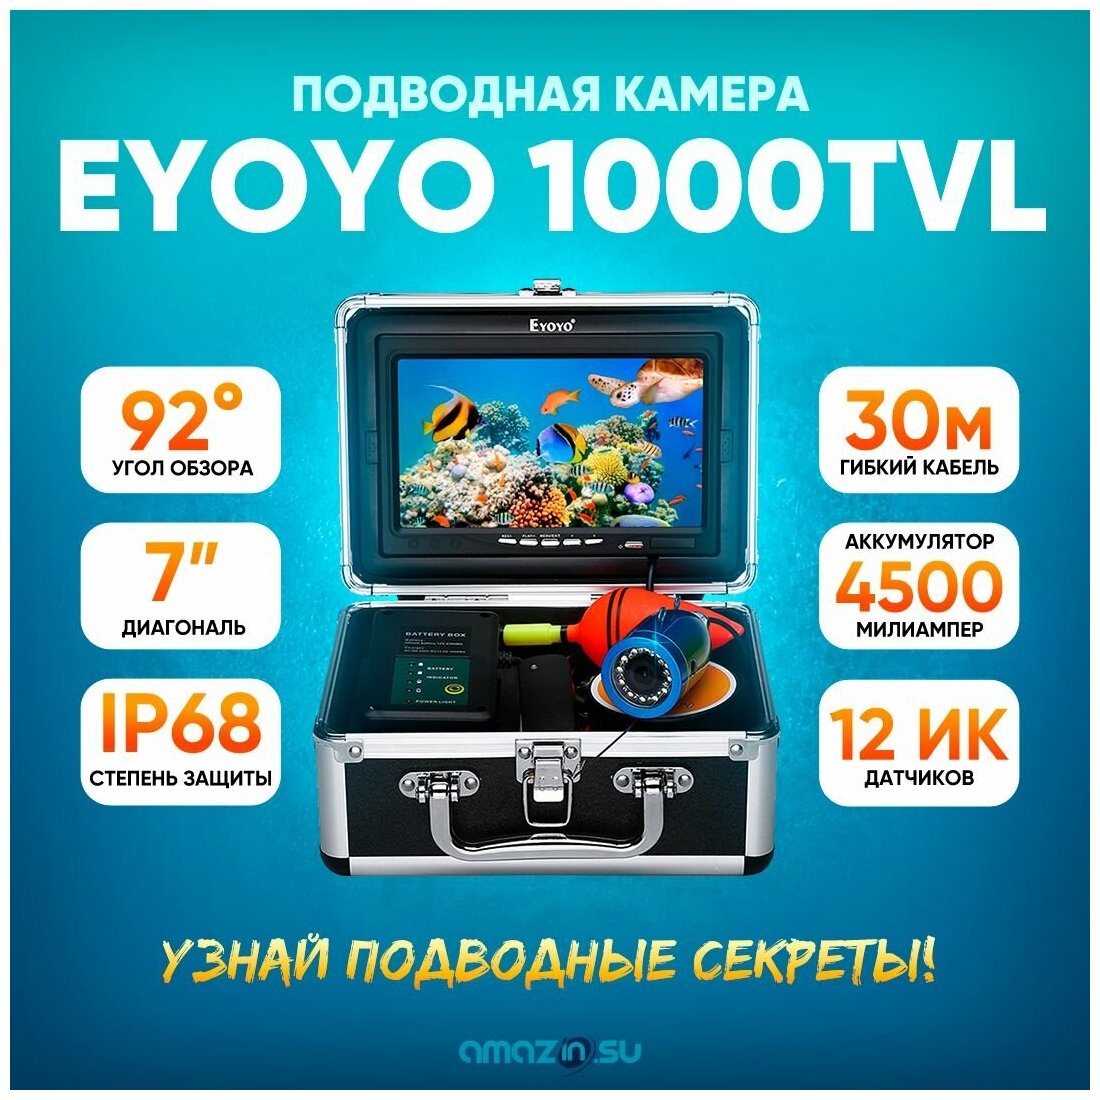 Подводная камера для зимней рыбалки Eyoyo 1000TVL 30 метров без записи